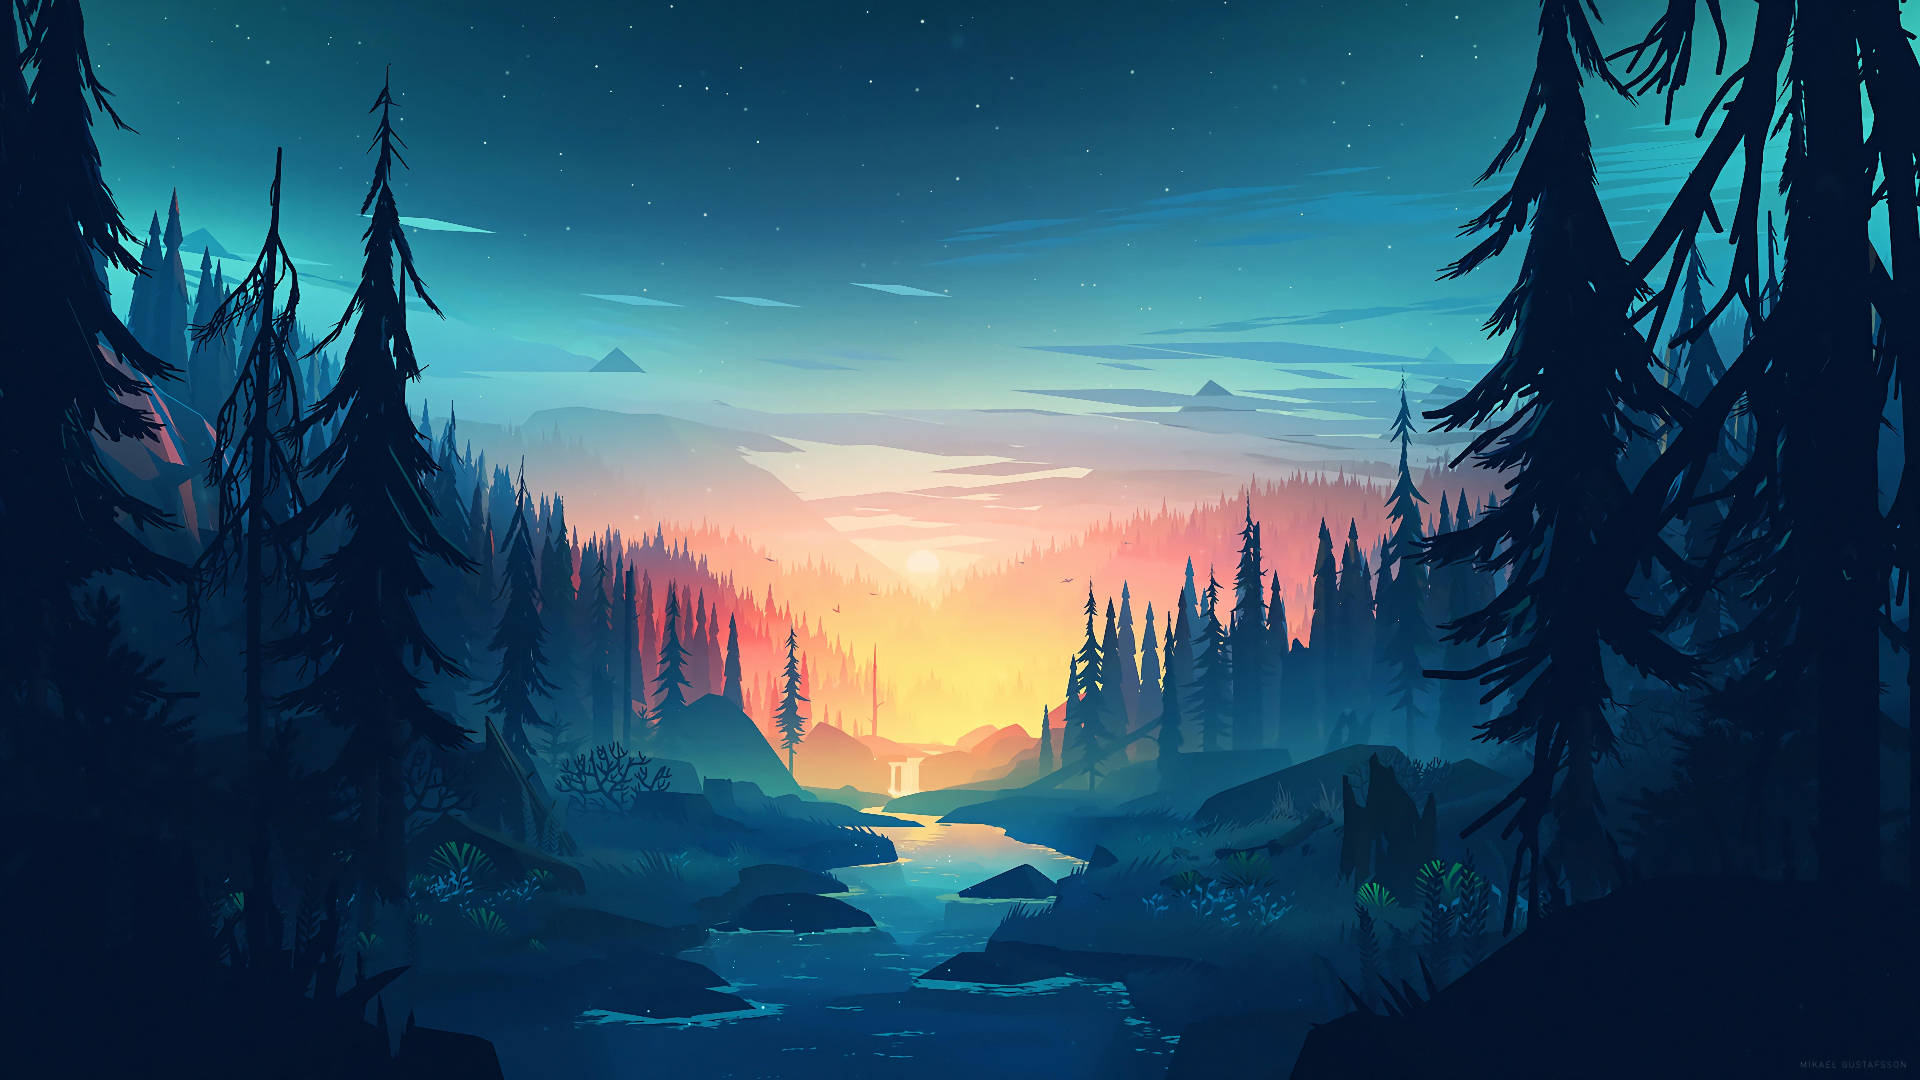 Forest Sunset Artwork Image